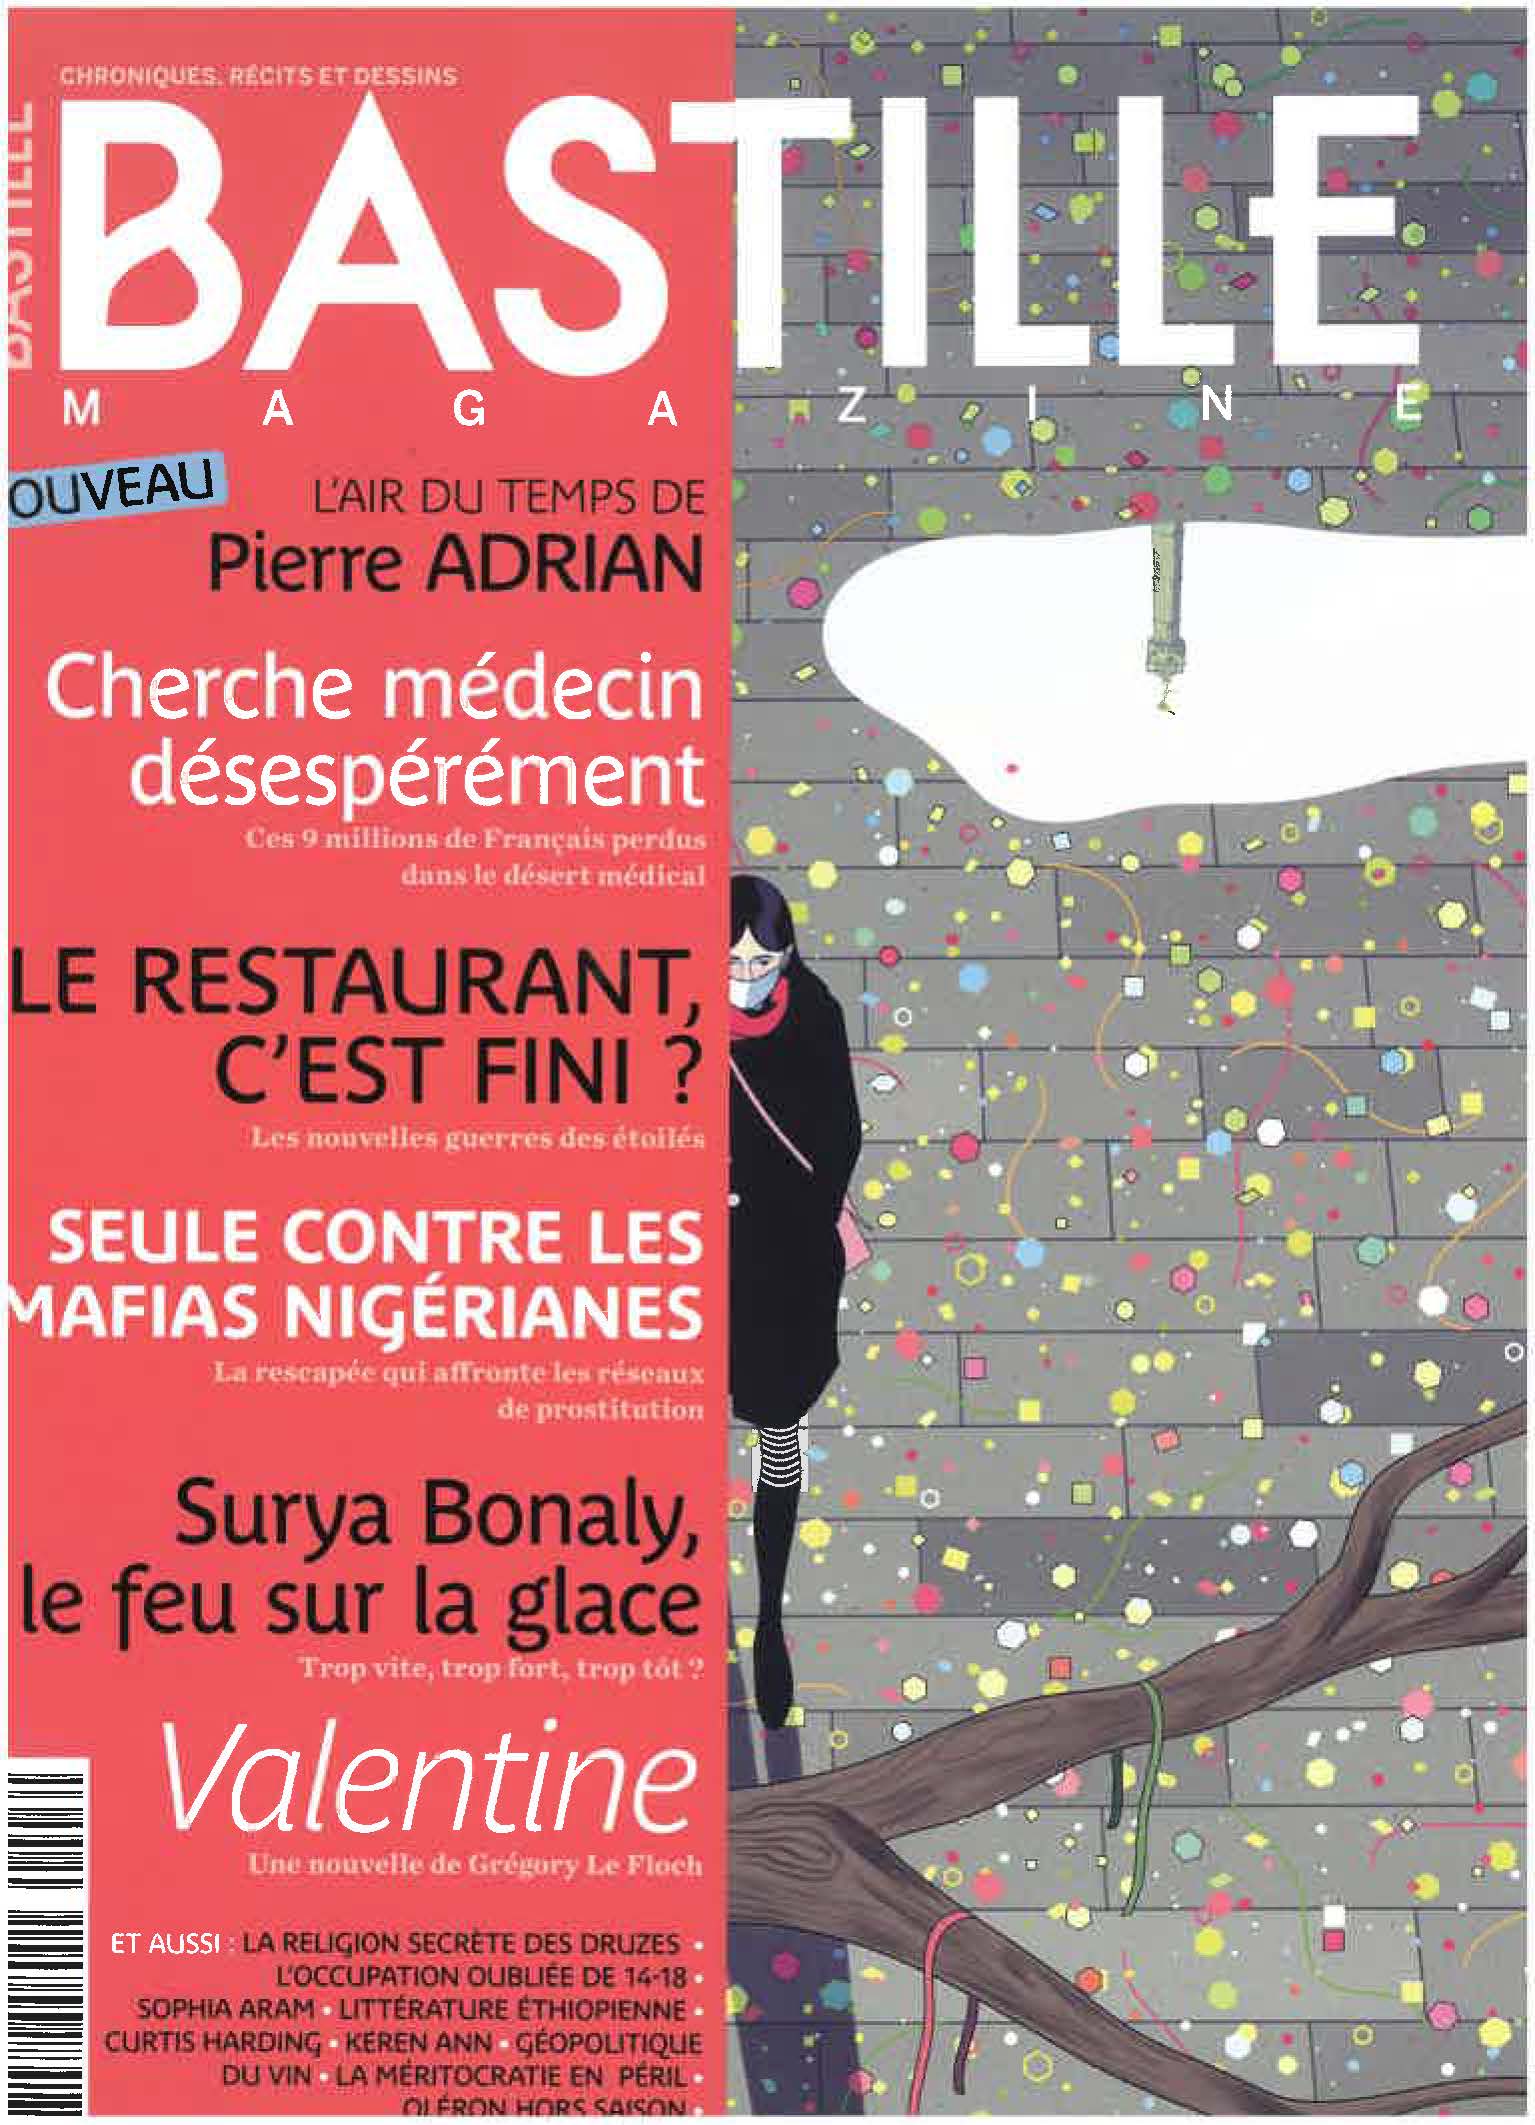 Bastille couv n°3 fevrier 2022 Page 1 - Office de tourisme du Saint-Quentinois